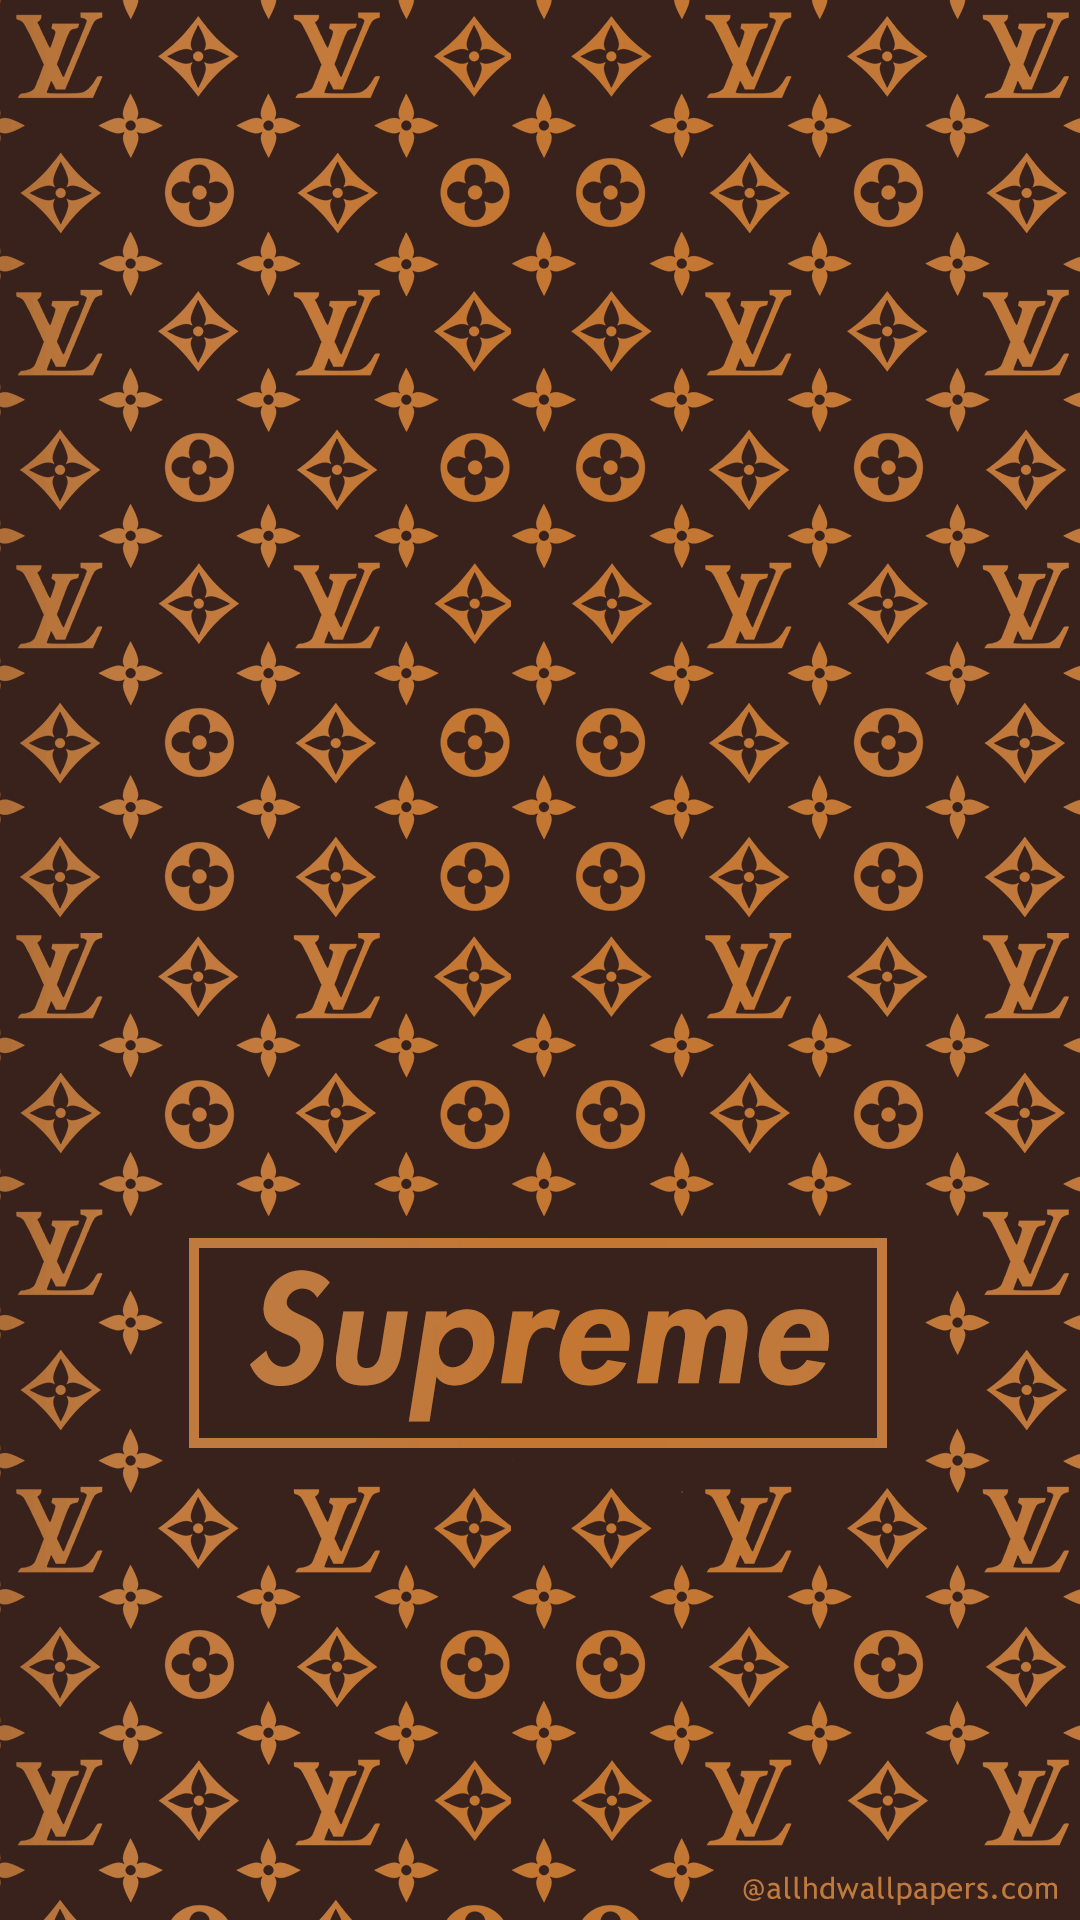 Supreme Wallpaper in 4K